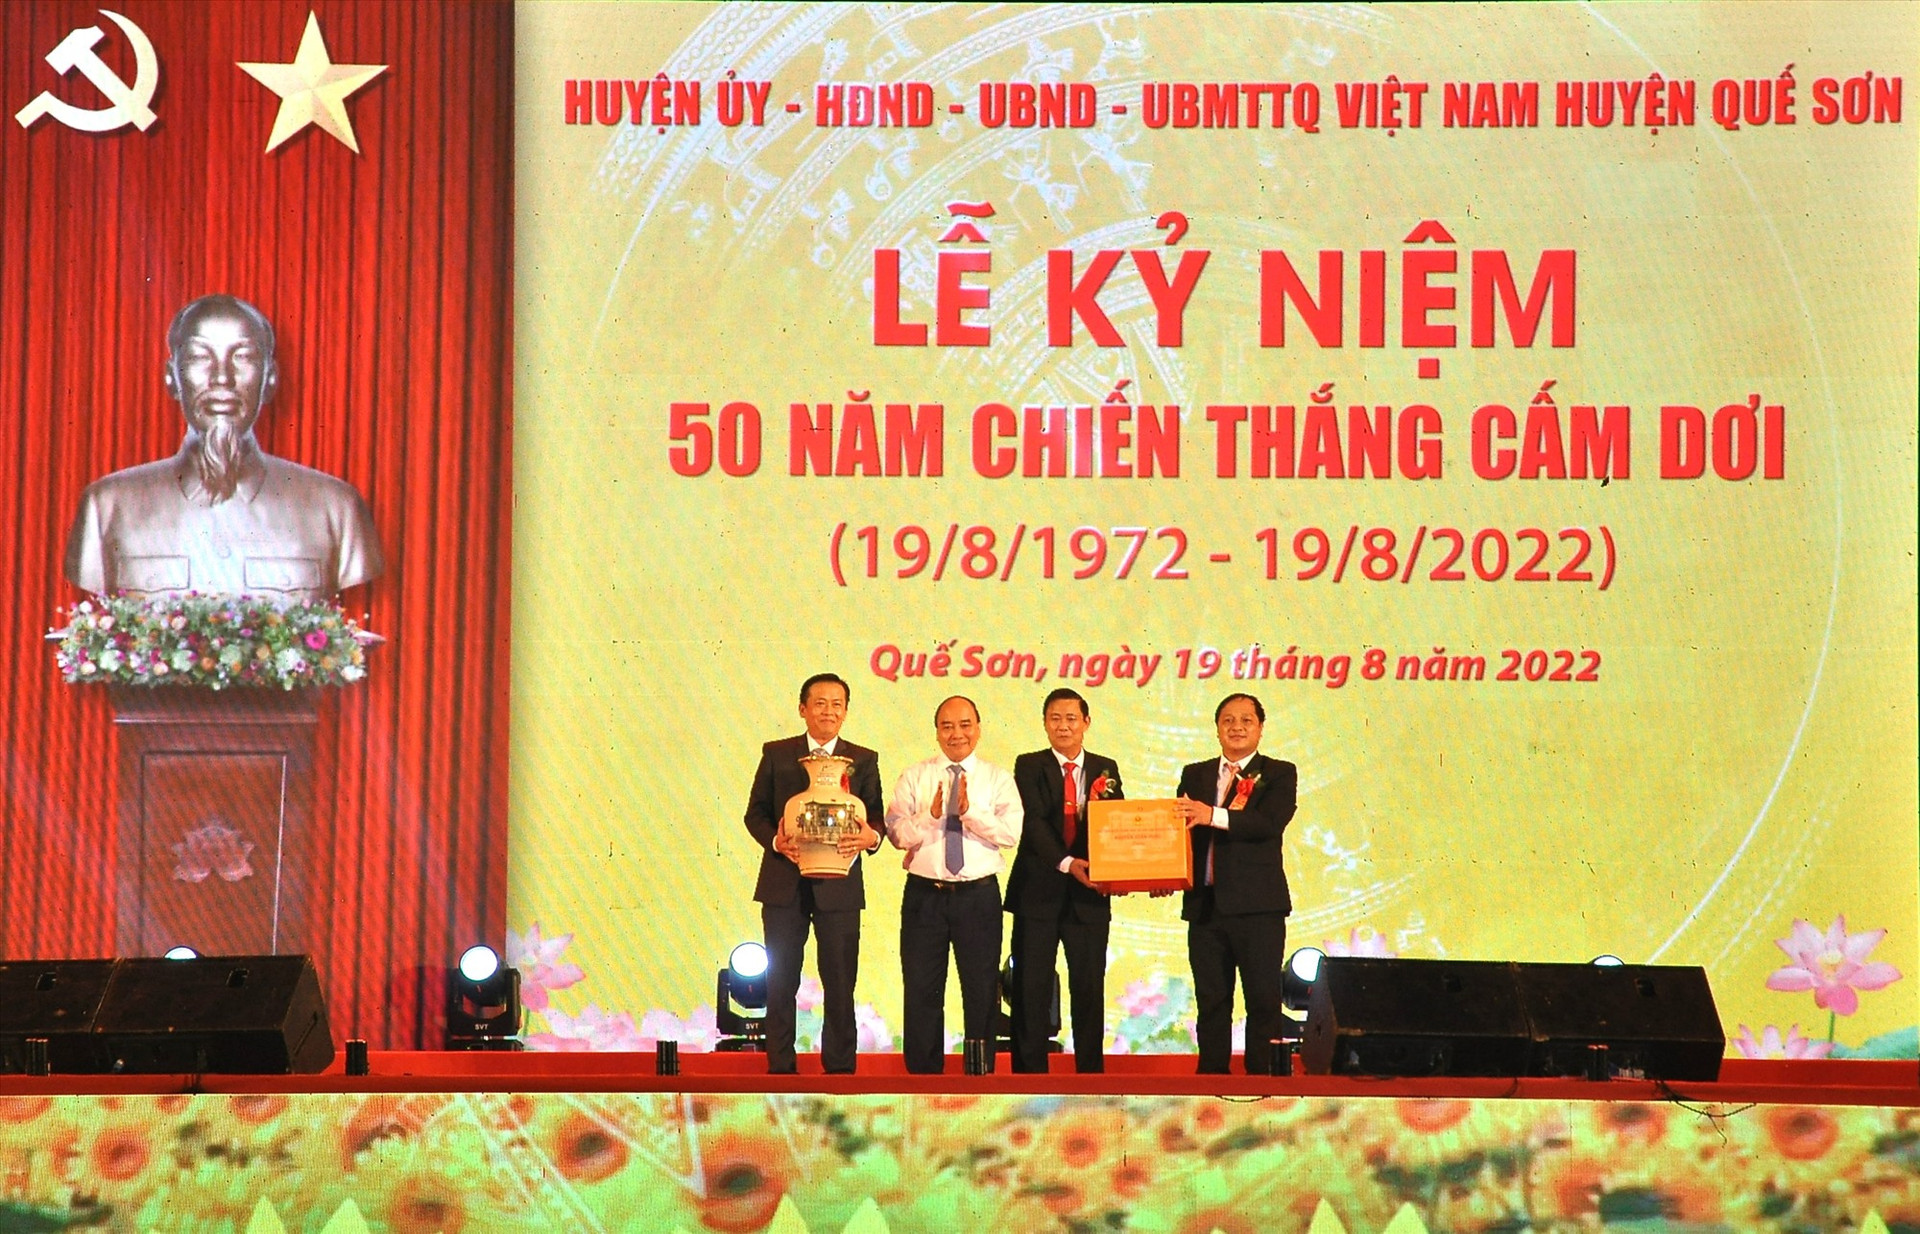 Chủ tịch nước Nguyễn Xuân Phúc tặng quà cho lãnh đạo huyện Quế Sơn. Ảnh: S.A